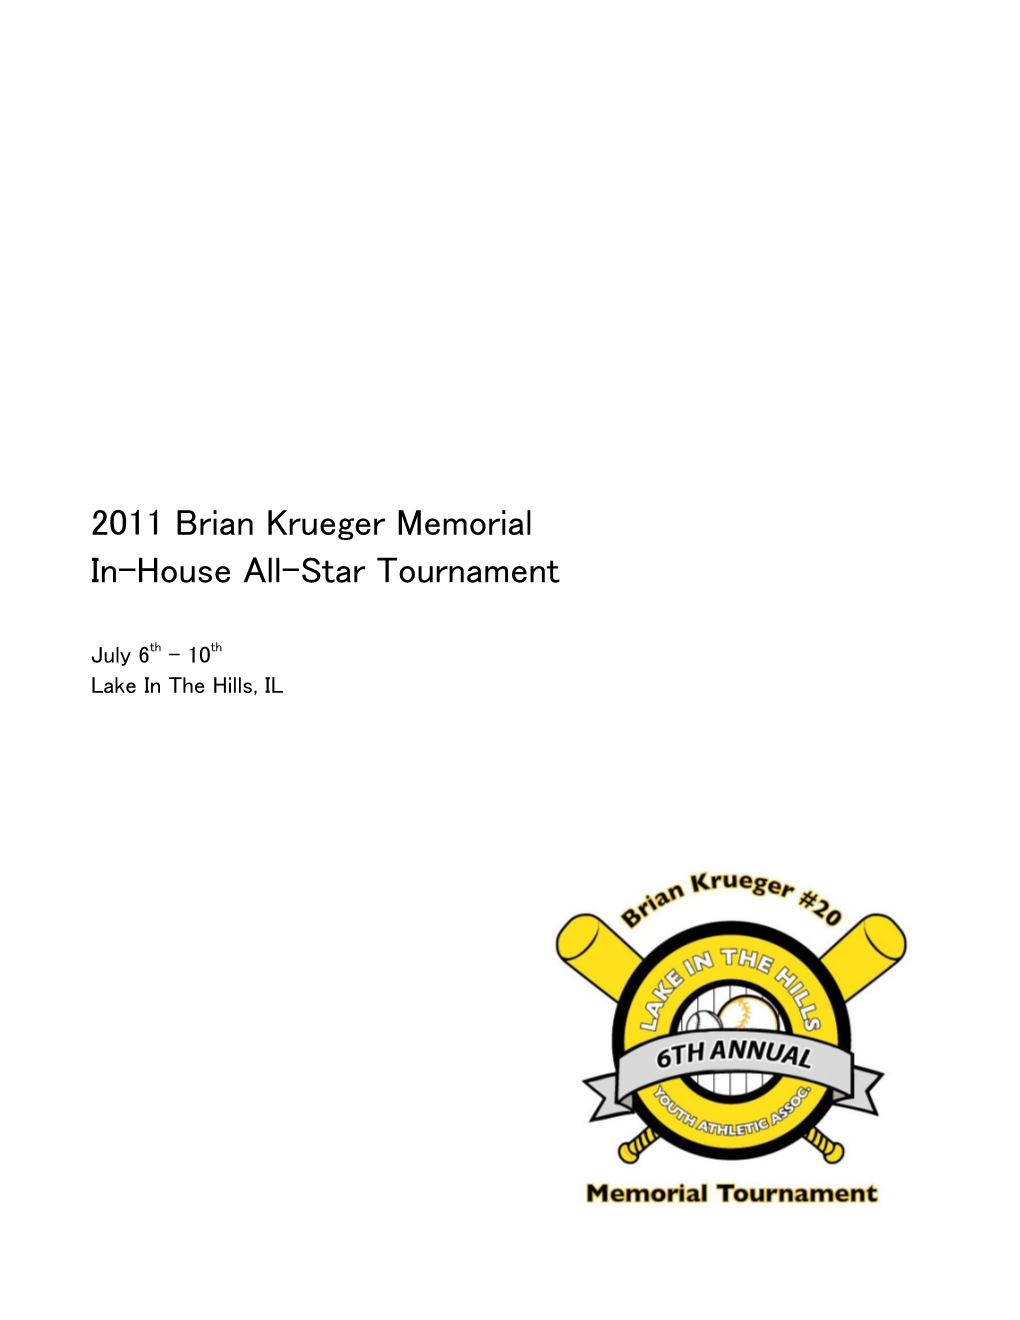 2009 Brian Krueger Memorial